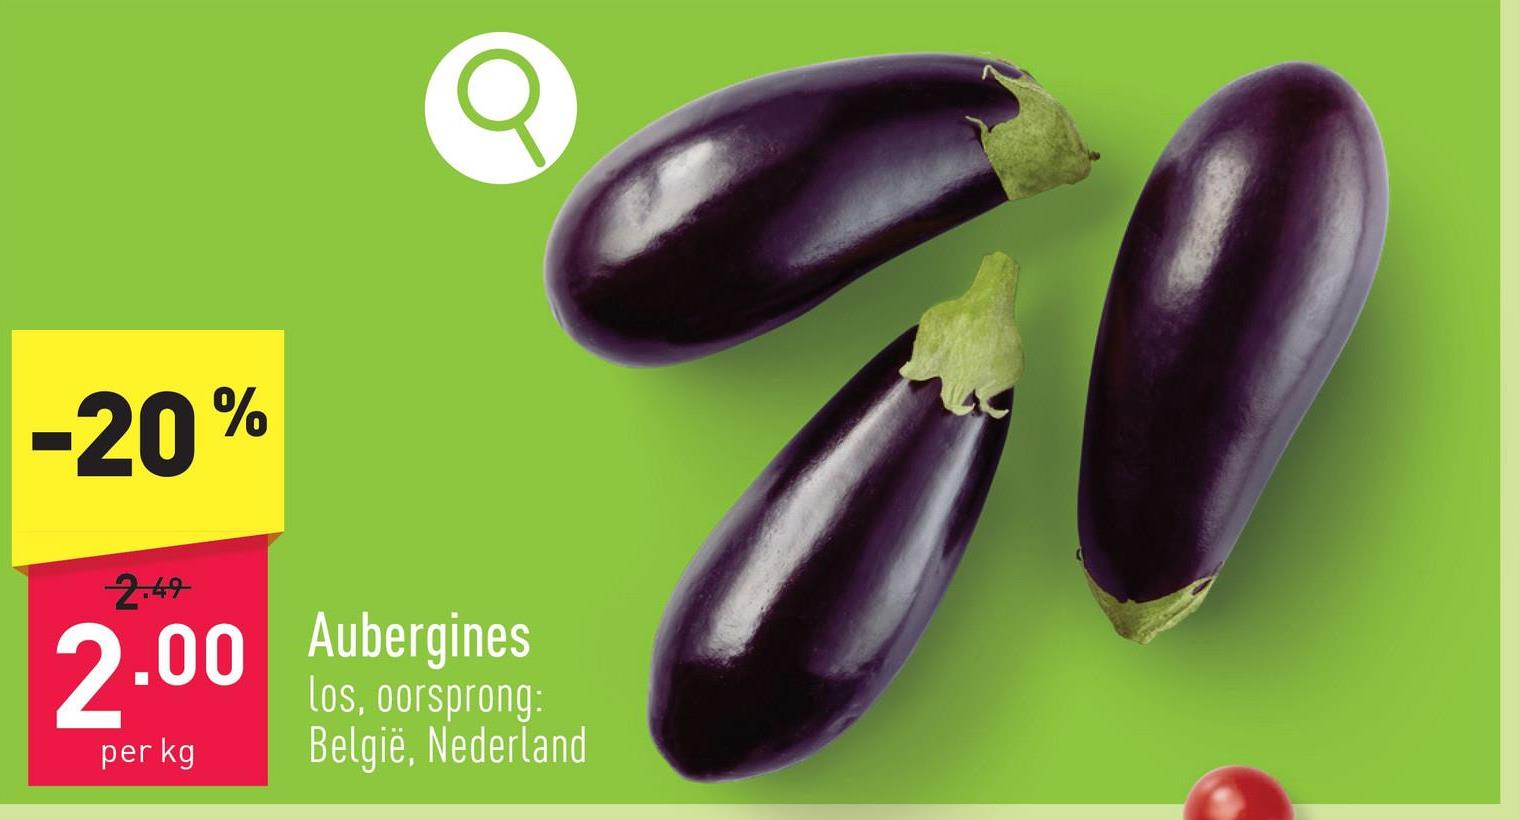 Aubergines los, oorsprong: België, Nederland